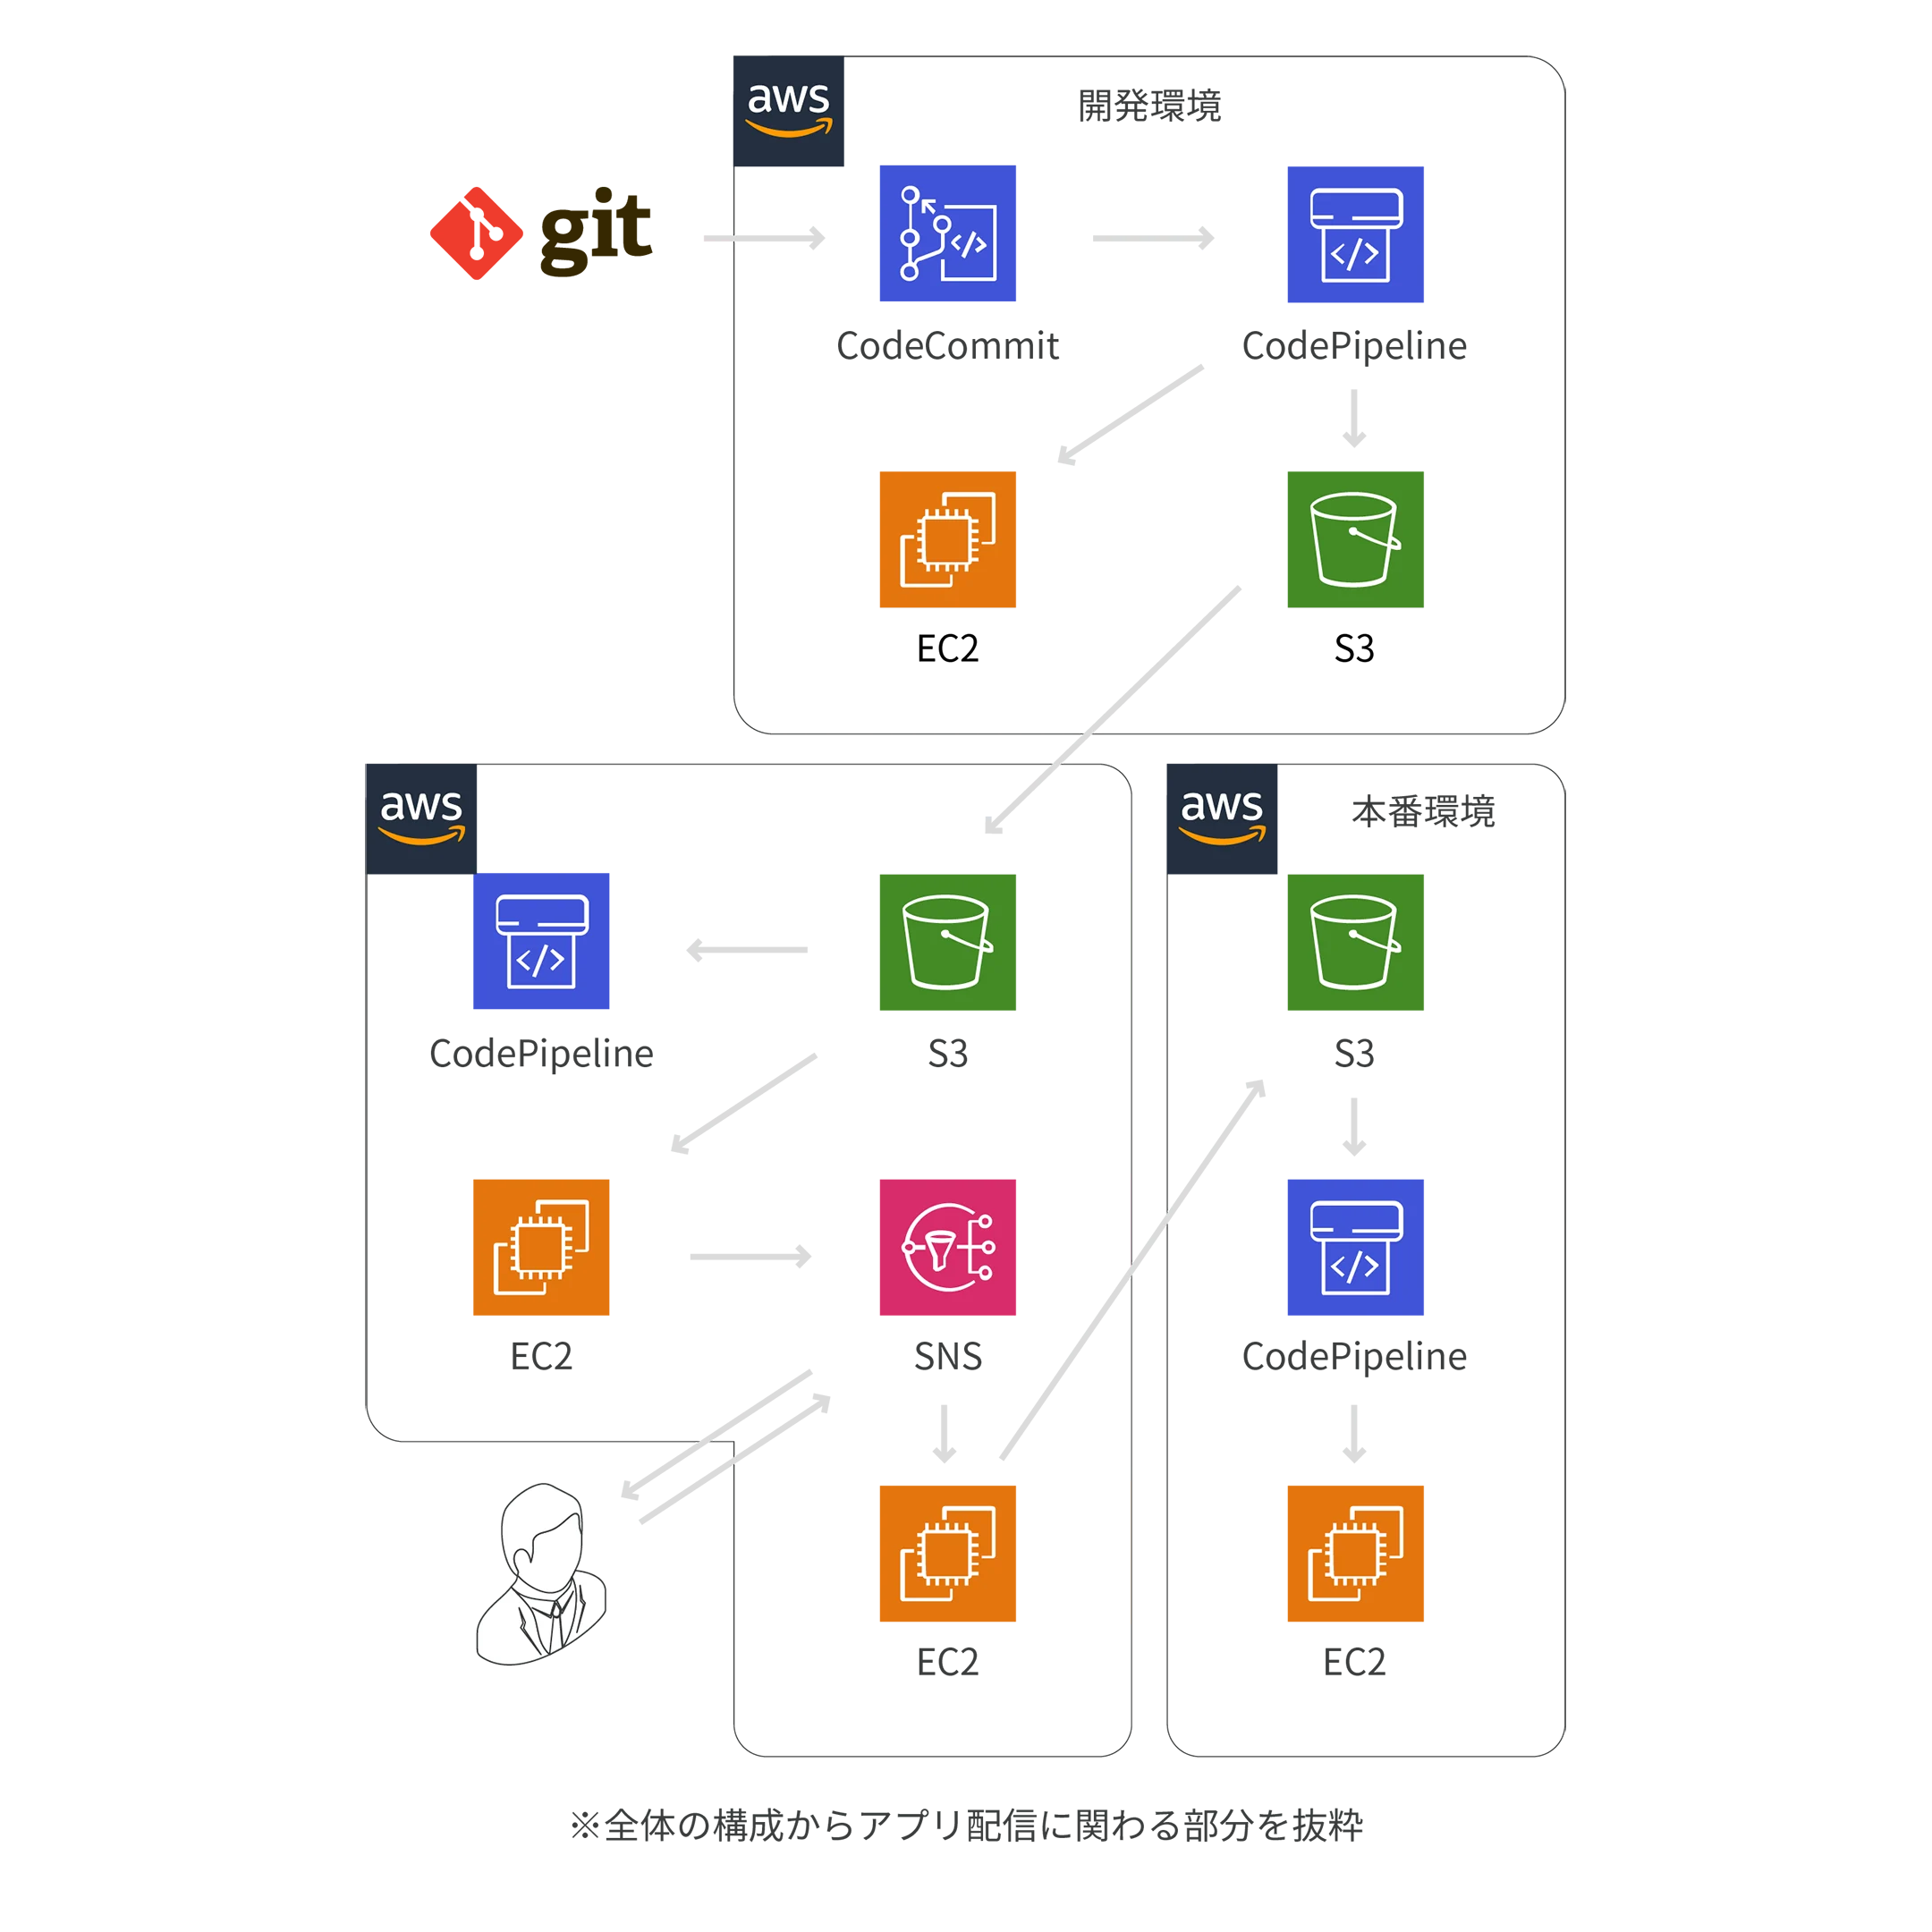 CloudFormation / Terraform を利用したAWS環境の構築の図解